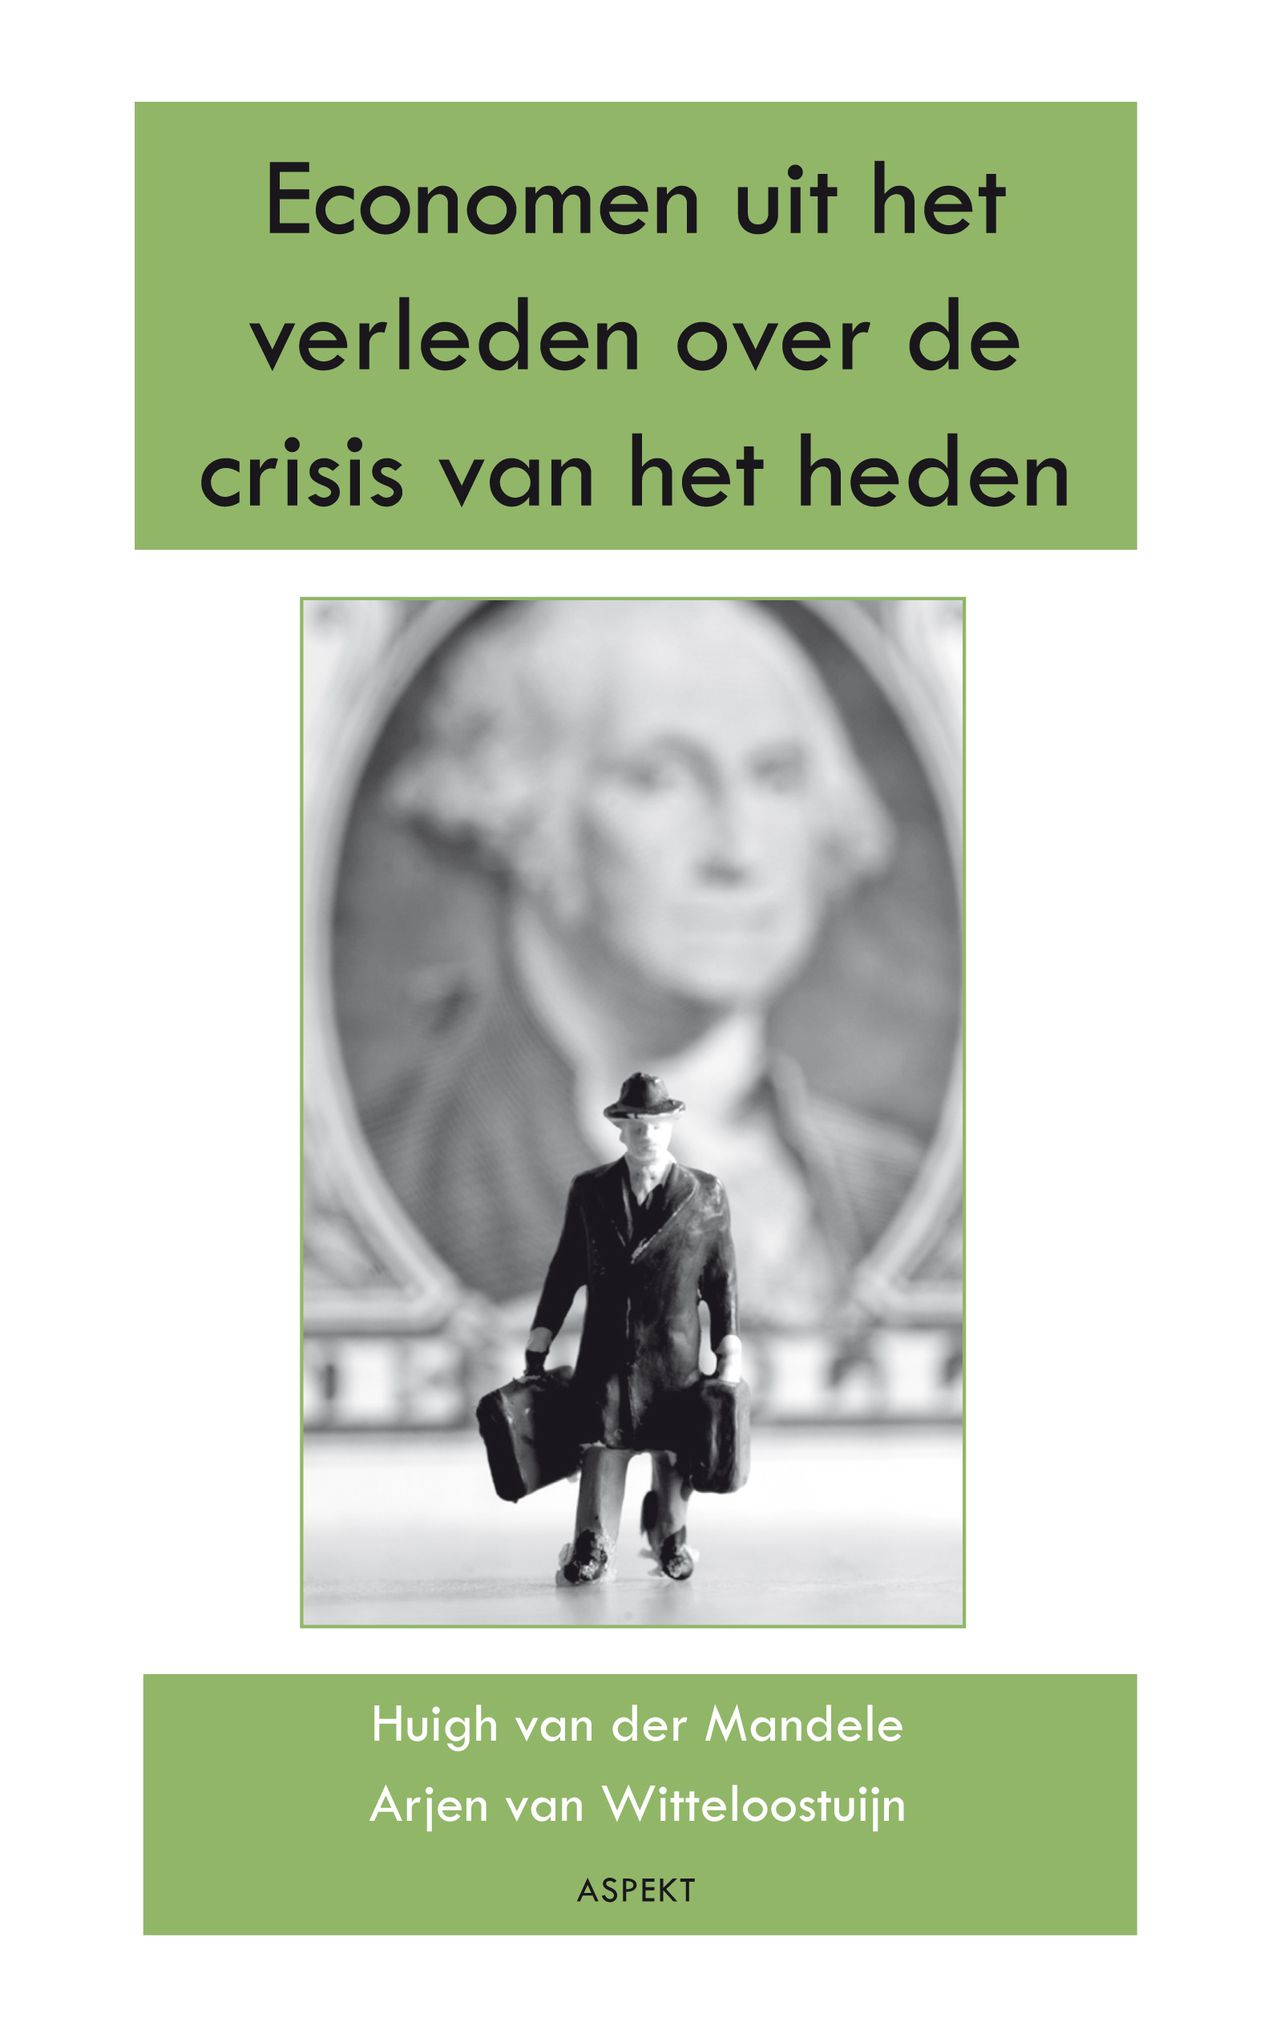 Cover van het boek Economen uit het verleden over de crisis van het heden van Huigh van der Mandele en Arjen van Witteloostuijn